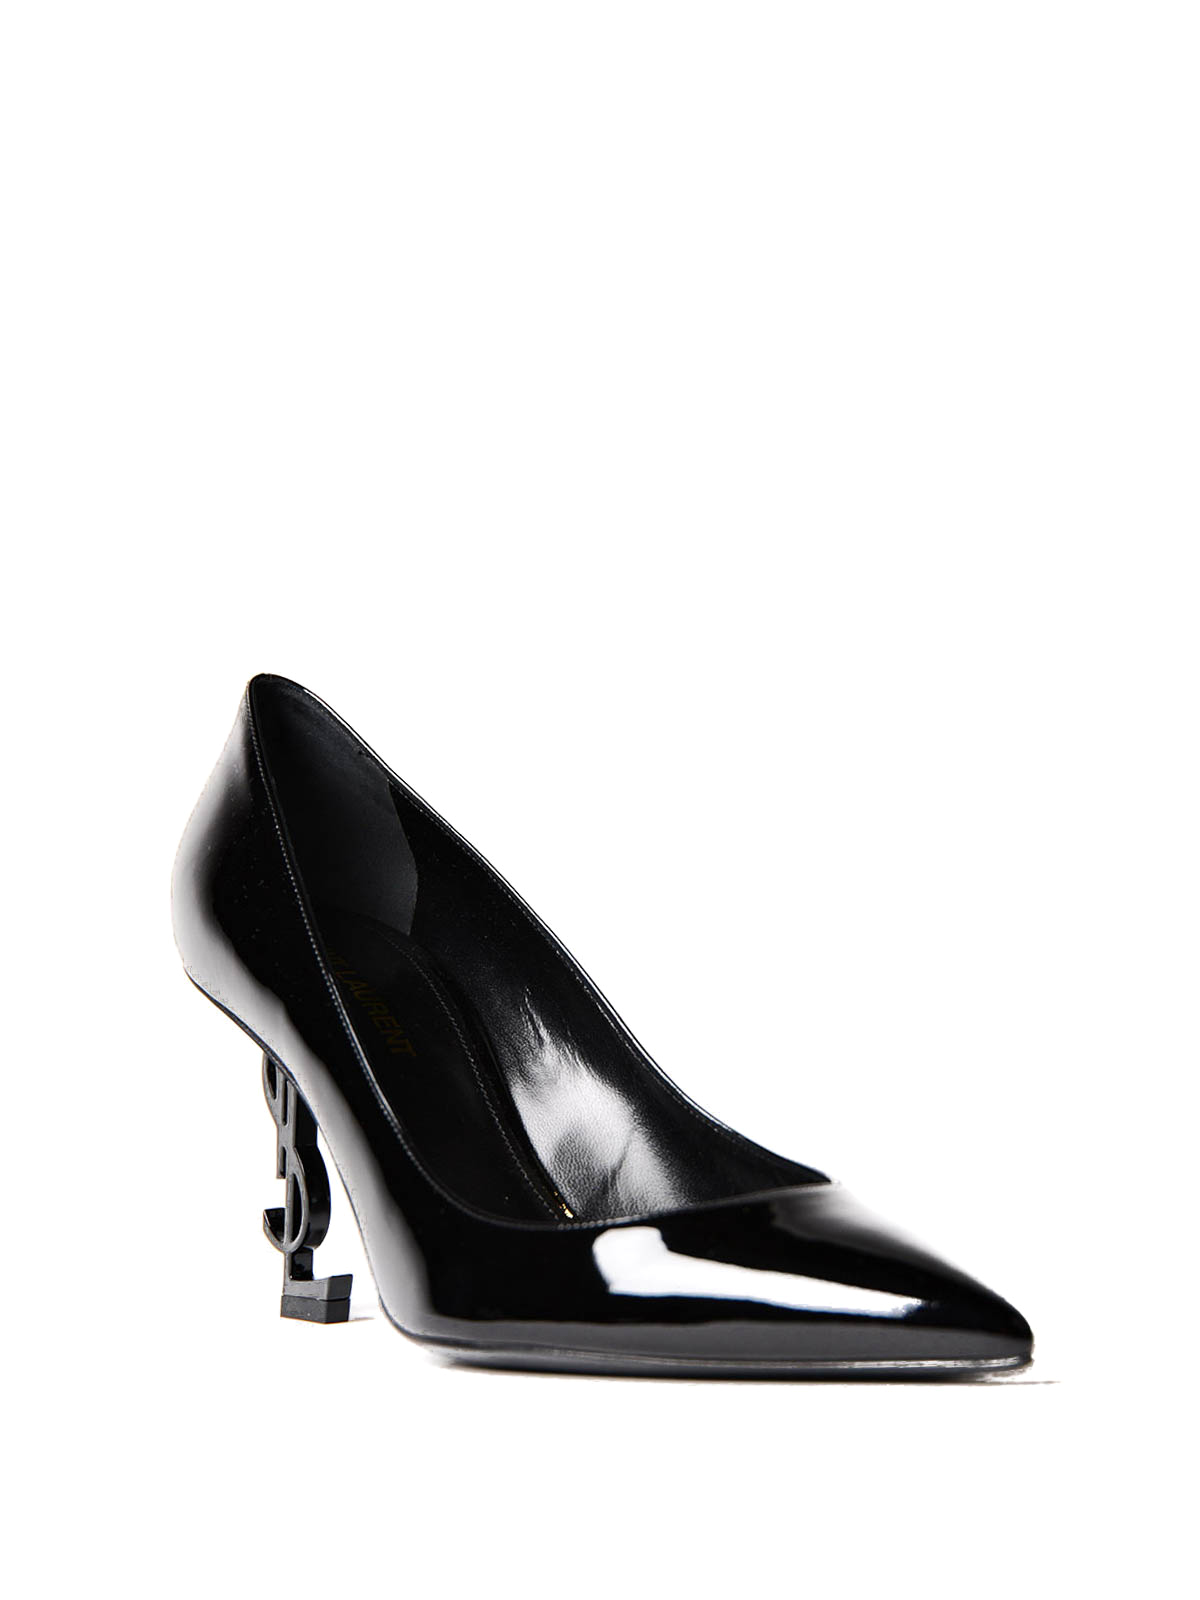 Court shoes Saint Laurent - Opyum YSL heeled patent pumps - 484160D6CVV1000